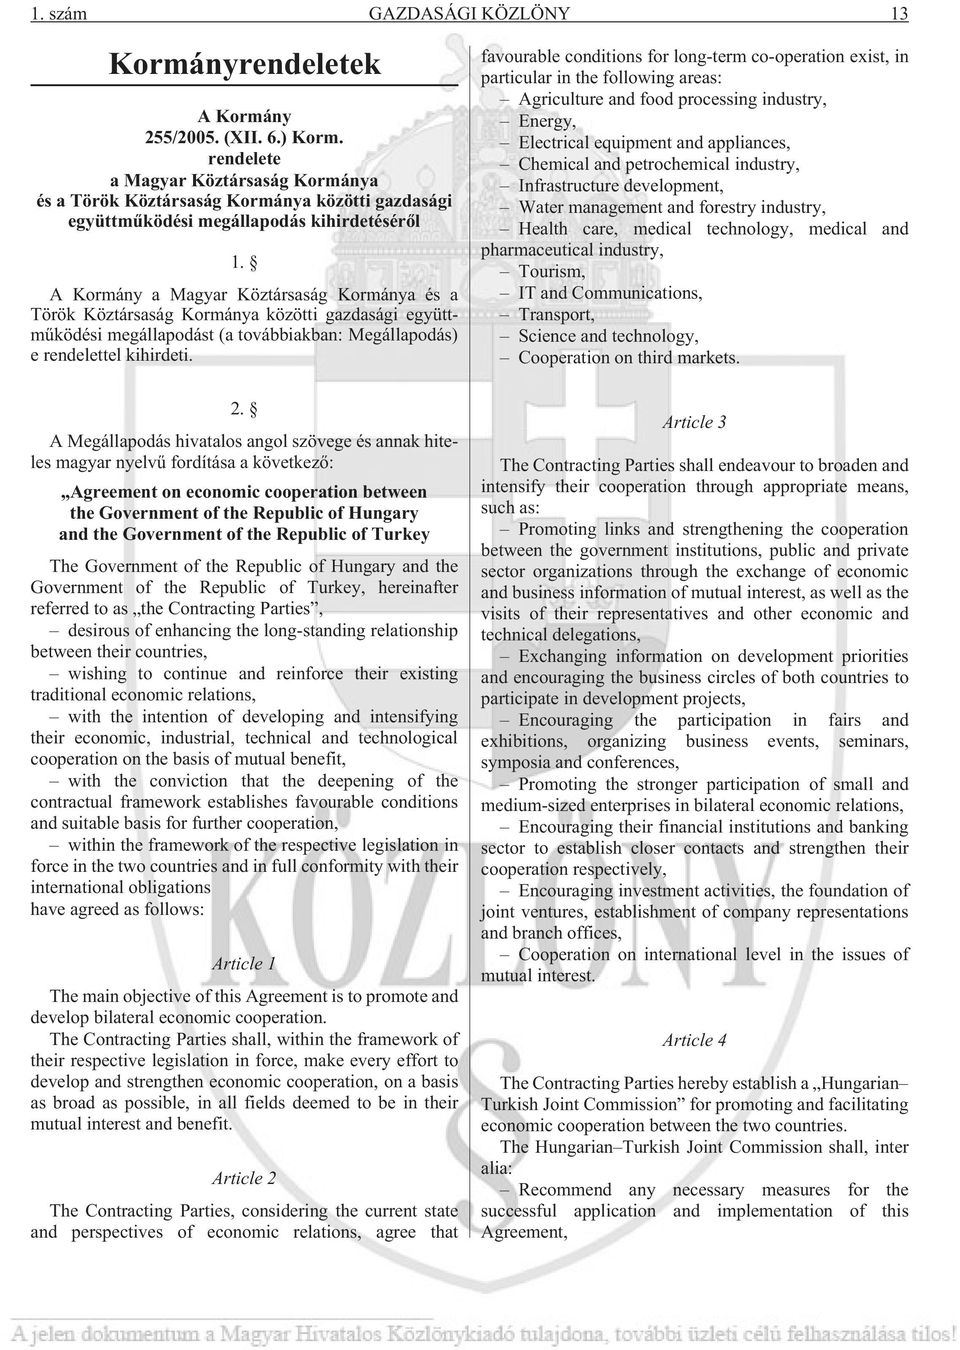 A Kormány a Magyar Köztársaság Kormánya és a Török Köztársaság Kormánya közötti gazdasági együttmûködési megállapodást (a továbbiakban: Megállapodás) e rendelettel kihirdeti. 2.